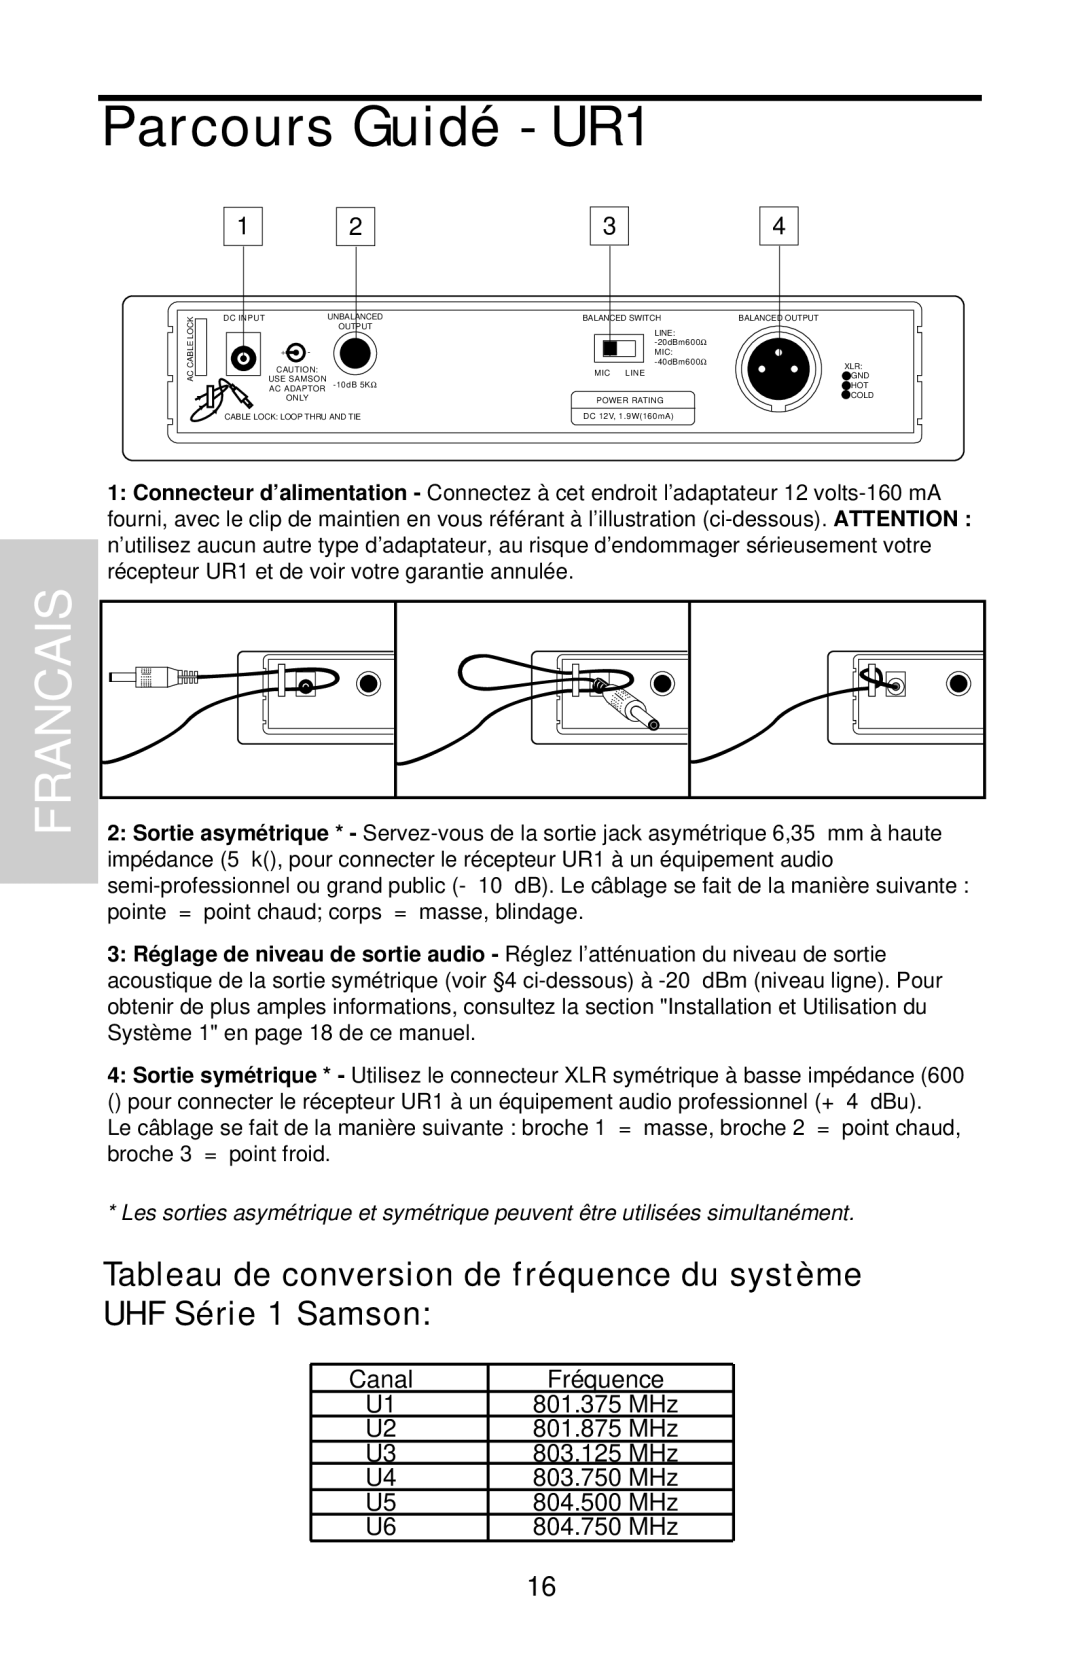 Samson UHF 801 owner manual Parcours Guidé - UR1, Francais, Canal 